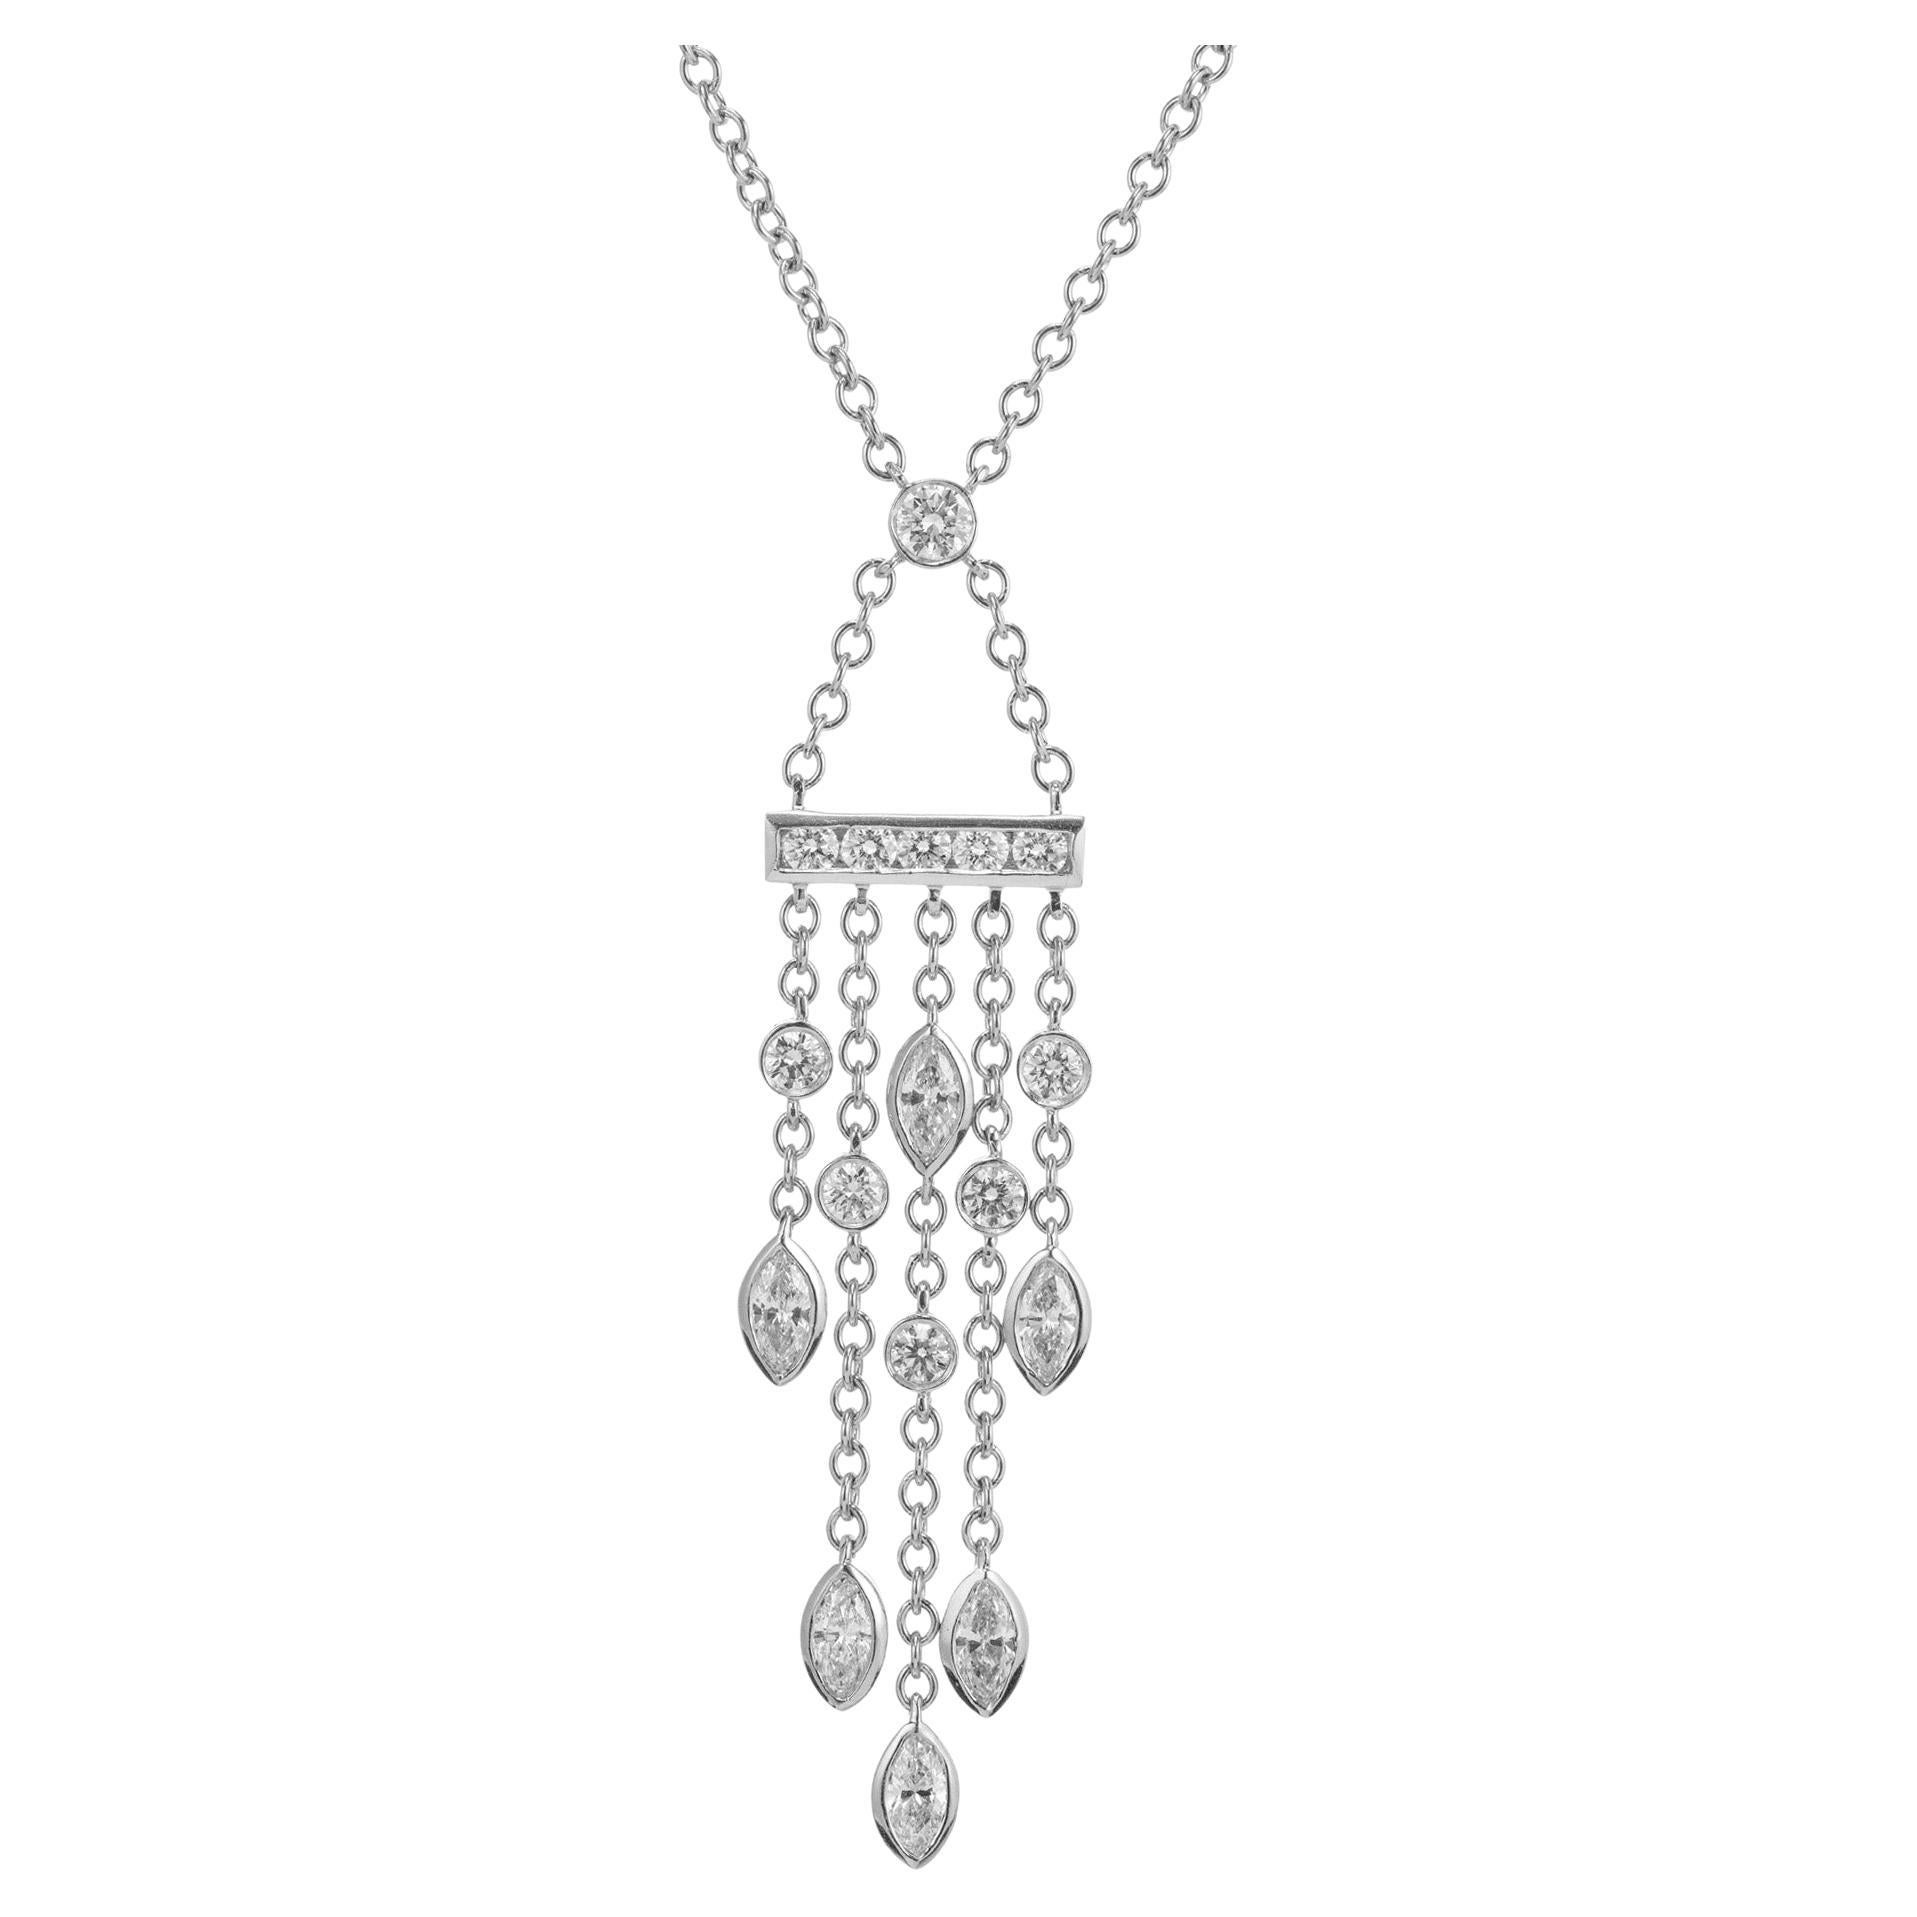 Tiffany & Co., collier pendentif en forme de goutte pivotante en platine avec diamants de 0,99 carat